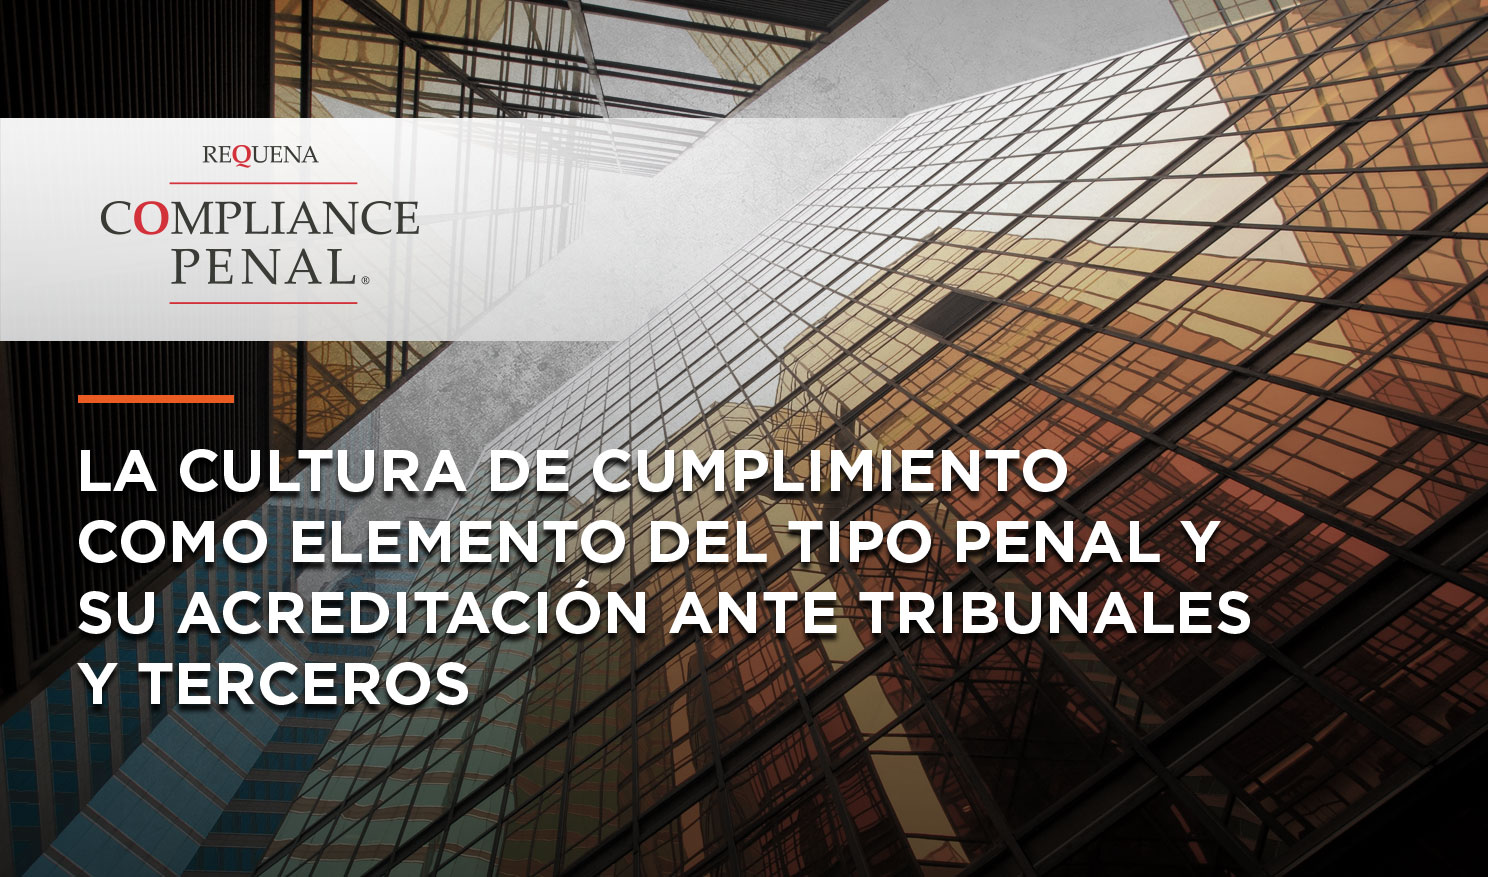 La Cultura de Cumplimiento como elemento de tipo penal y su acreditación ante tribunales y terceros | Compliance Penal | Abogado Carlos Requena